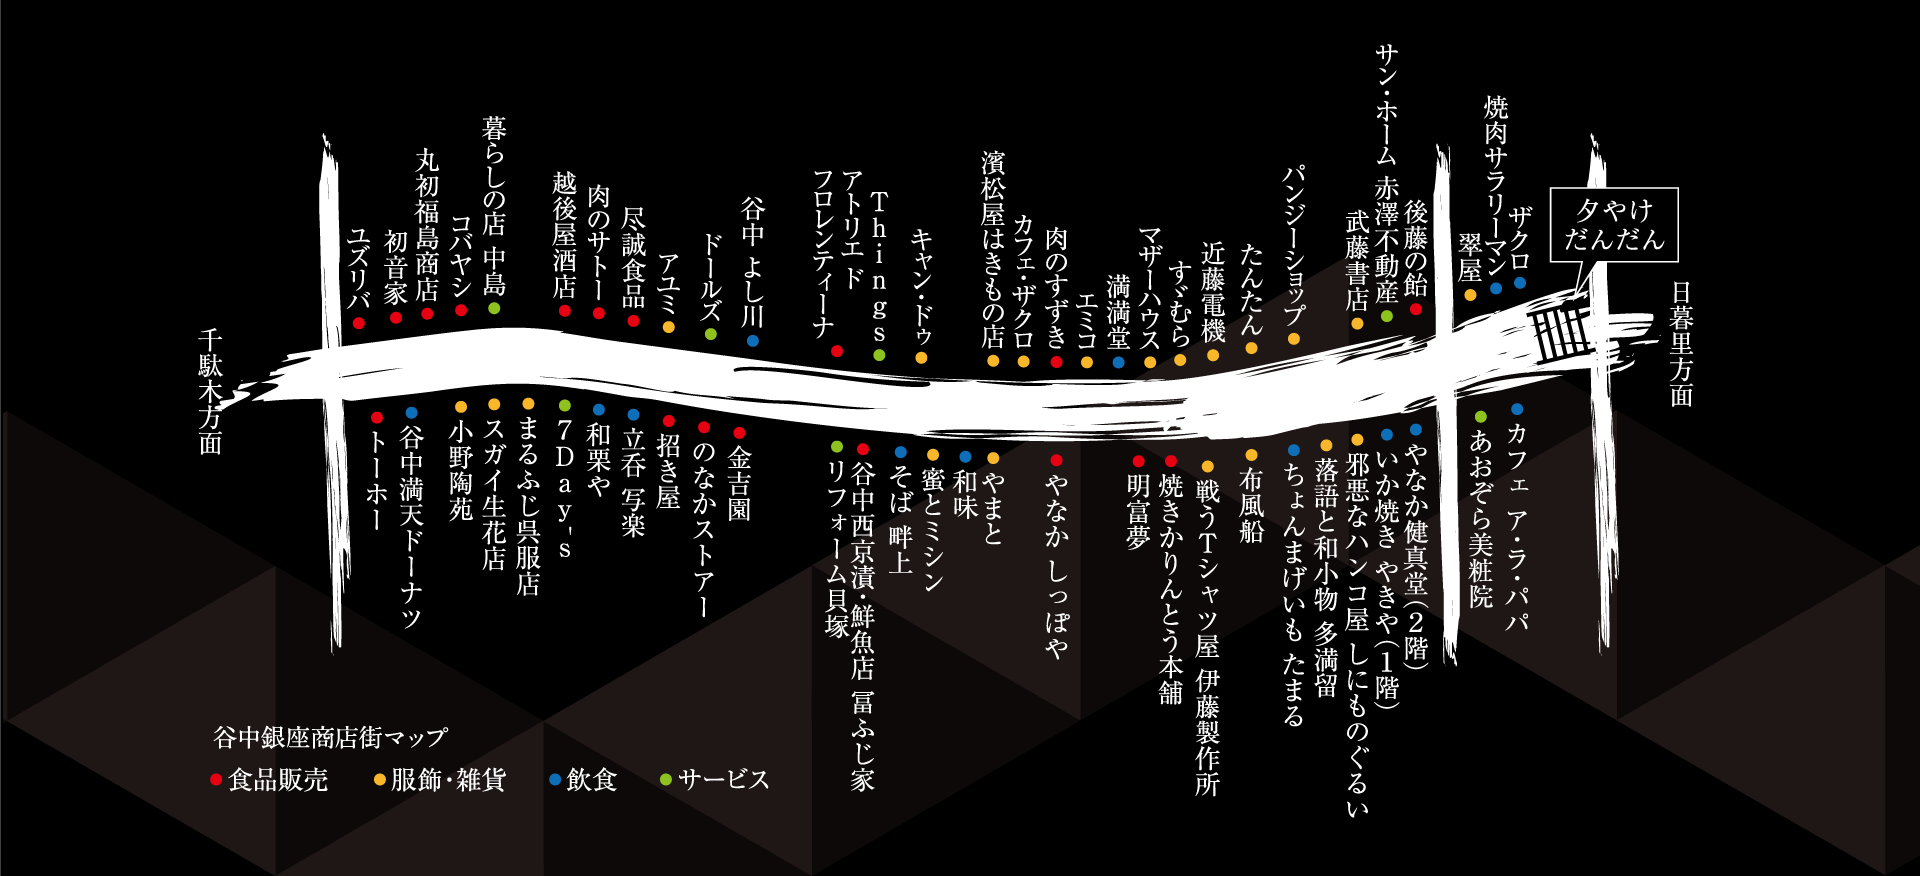 谷中銀座商店街マップ